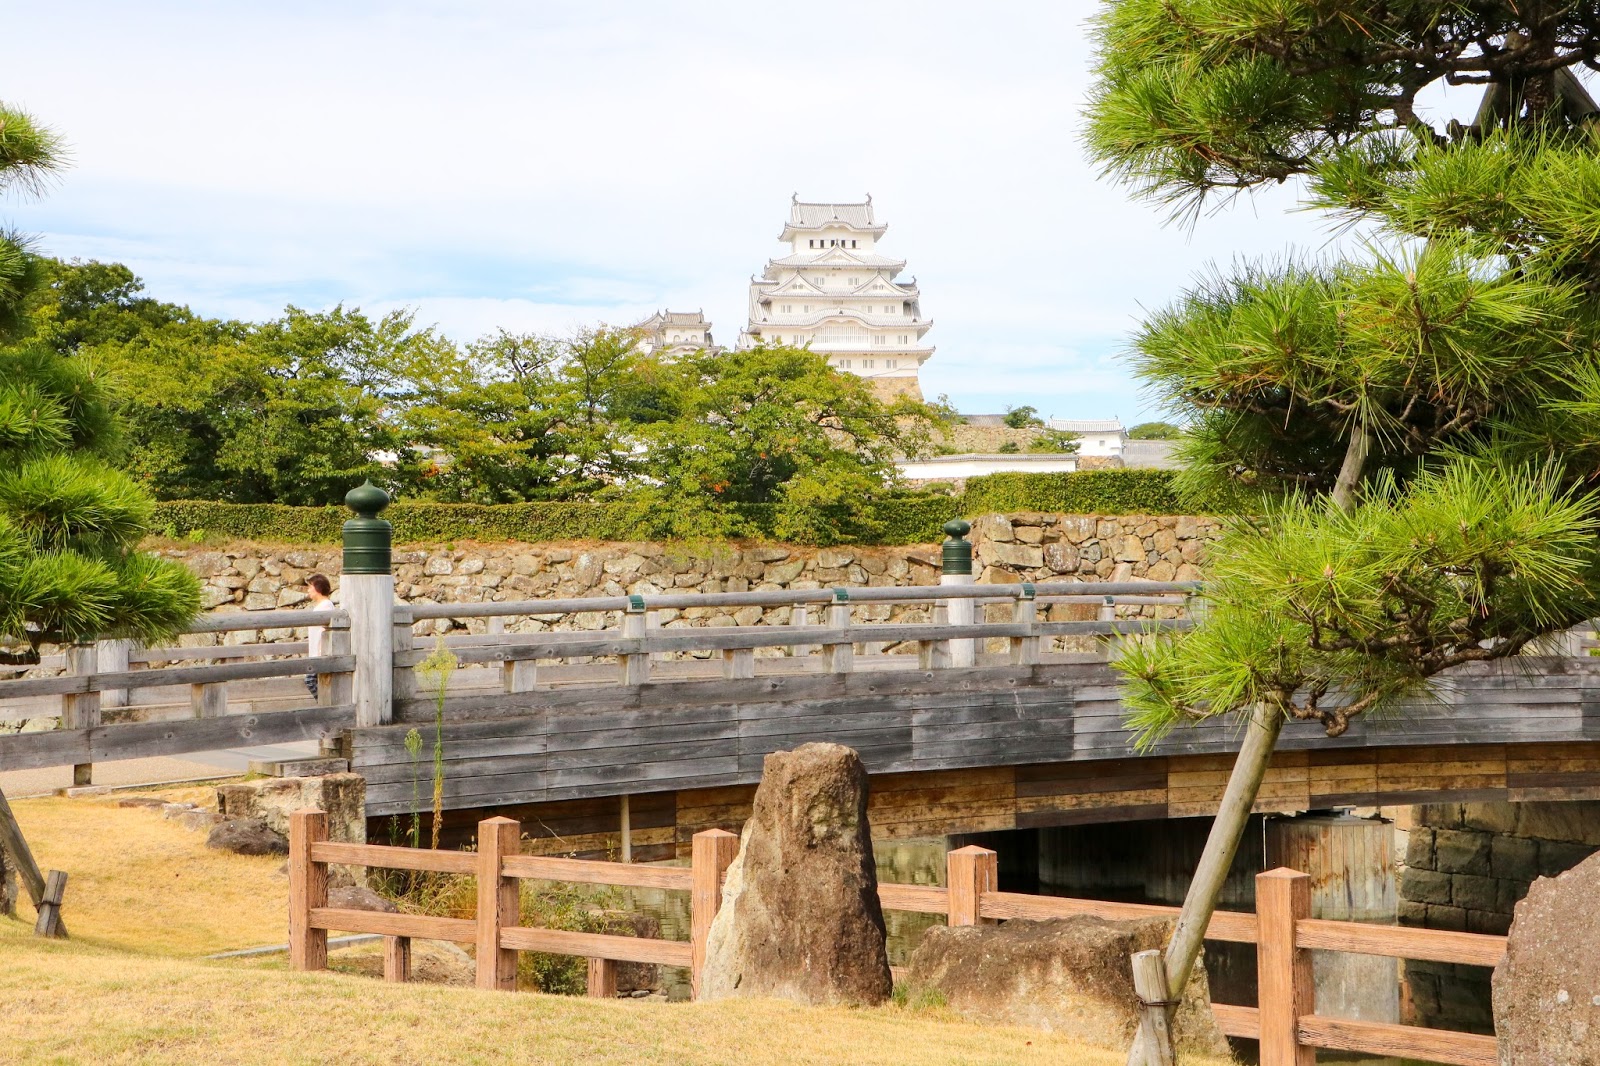 Himeji Castle - The largest castle in Japan